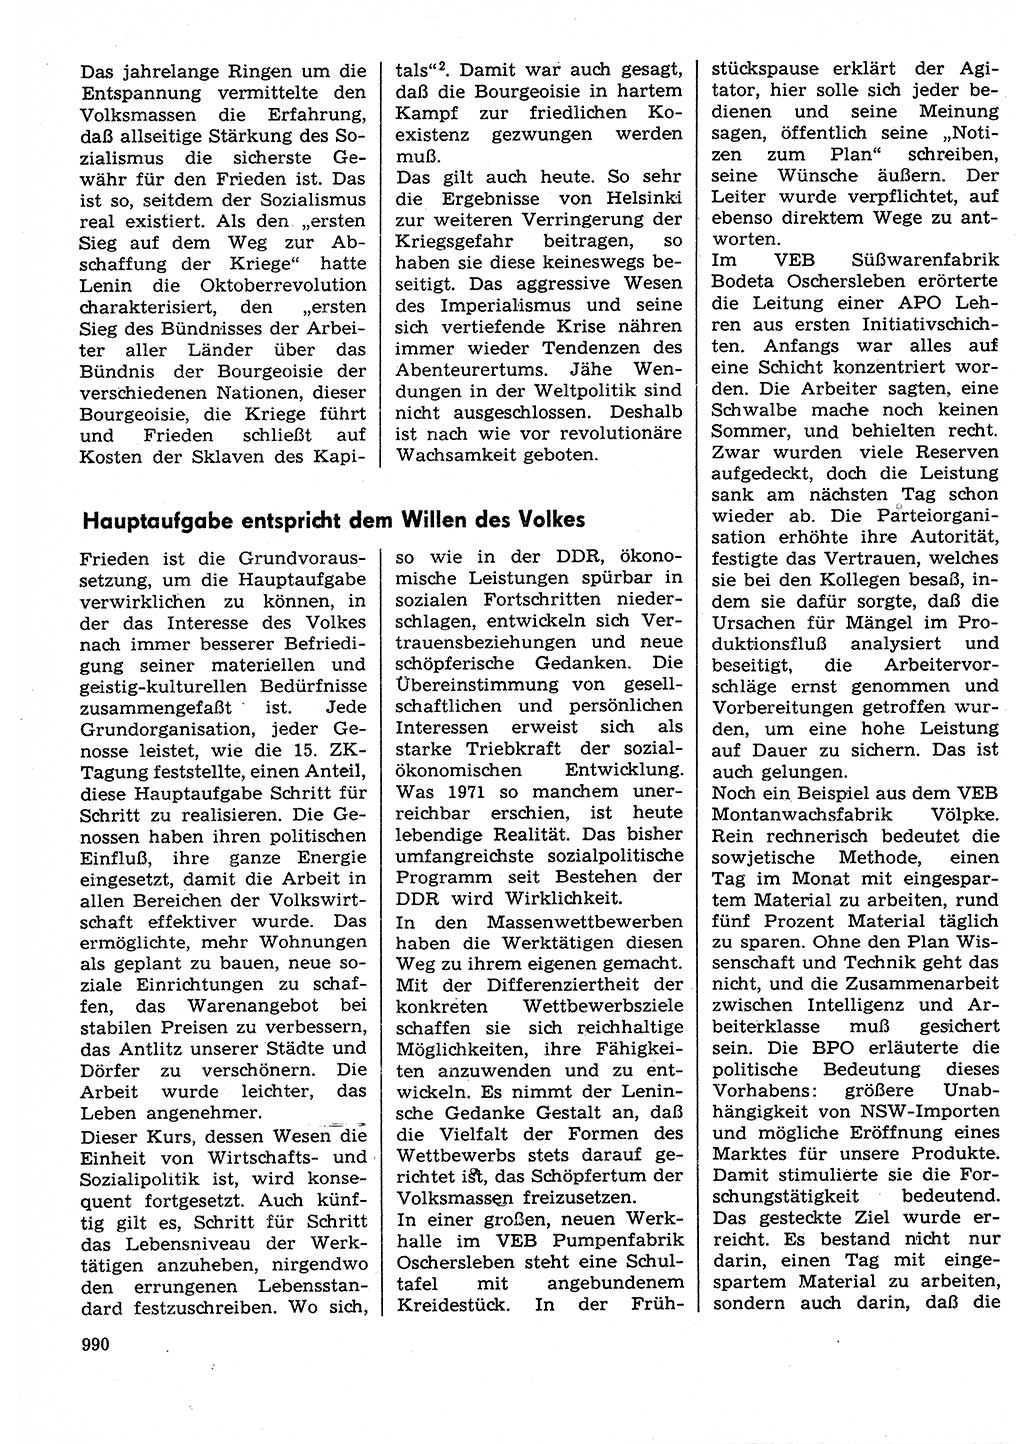 Neuer Weg (NW), Organ des Zentralkomitees (ZK) der SED (Sozialistische Einheitspartei Deutschlands) für Fragen des Parteilebens, 30. Jahrgang [Deutsche Demokratische Republik (DDR)] 1975, Seite 990 (NW ZK SED DDR 1975, S. 990)